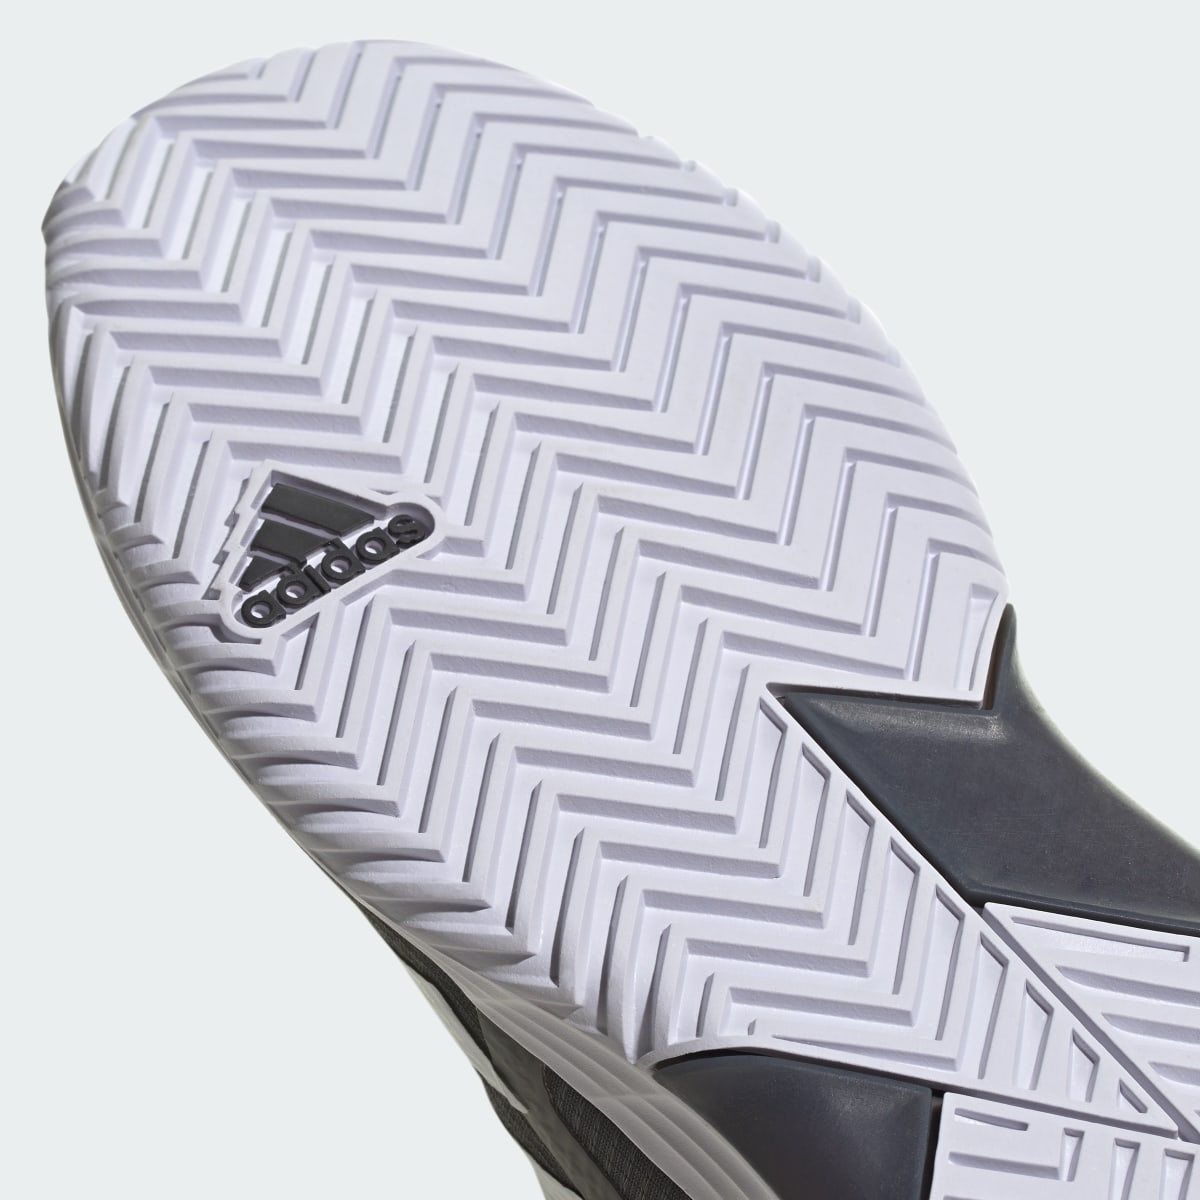 Adidas Adizero Ubersonic 4.1 Tennis Shoes. 12